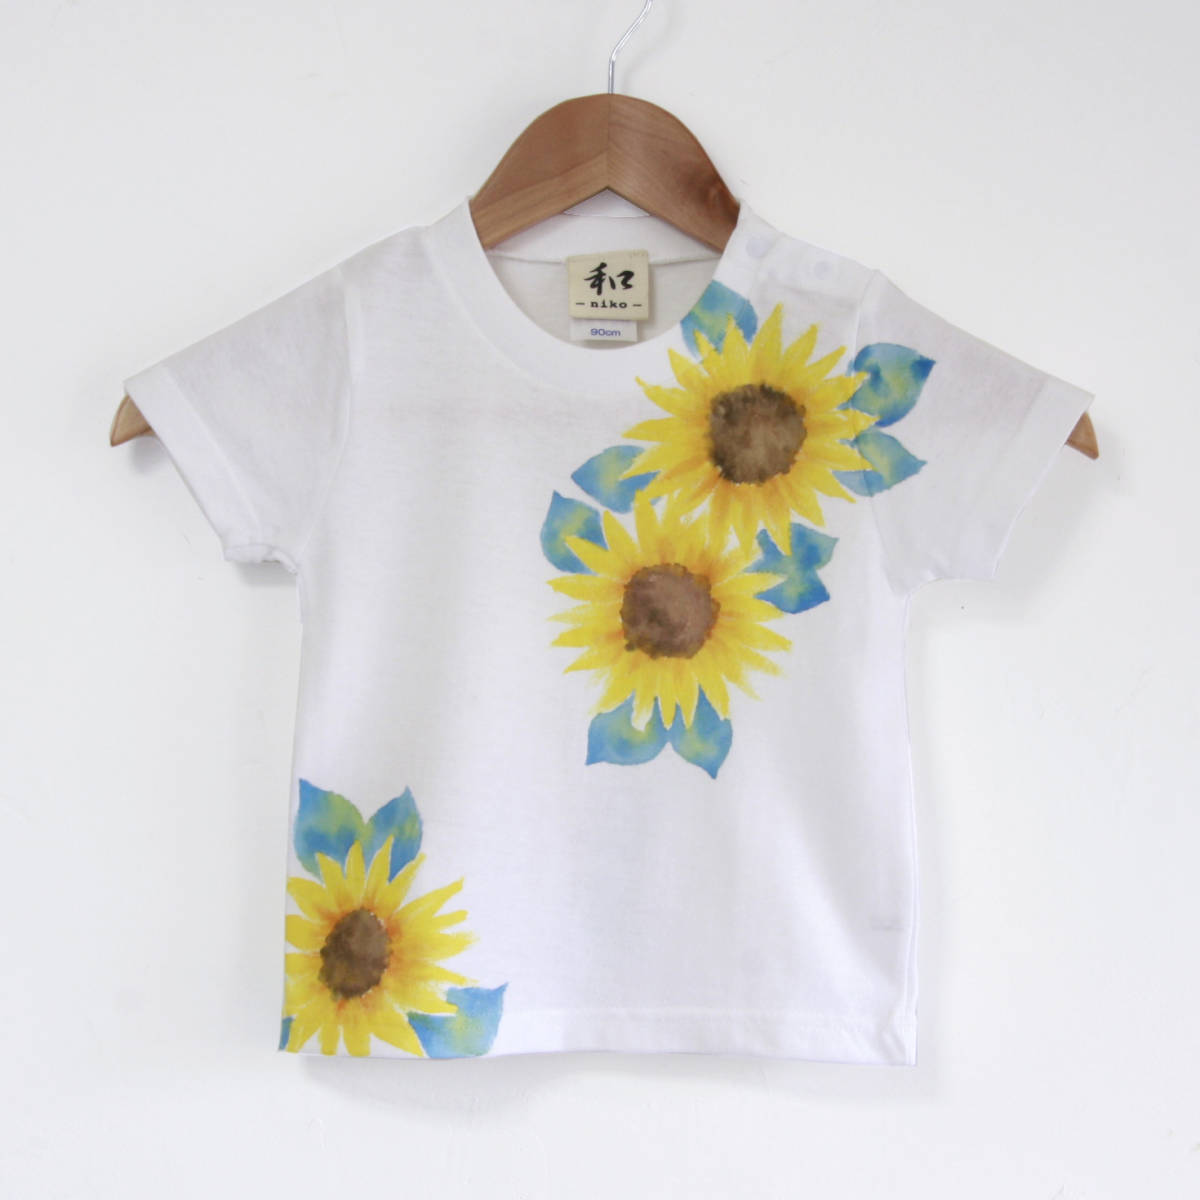 아동복 아동 티셔츠 사이즈 110 흰색 해바라기 무늬 티셔츠 수제 손으로 그린 티셔츠 꽃 무늬 여름 선물, 상의, 반소매 티셔츠, 110(105~114cm)